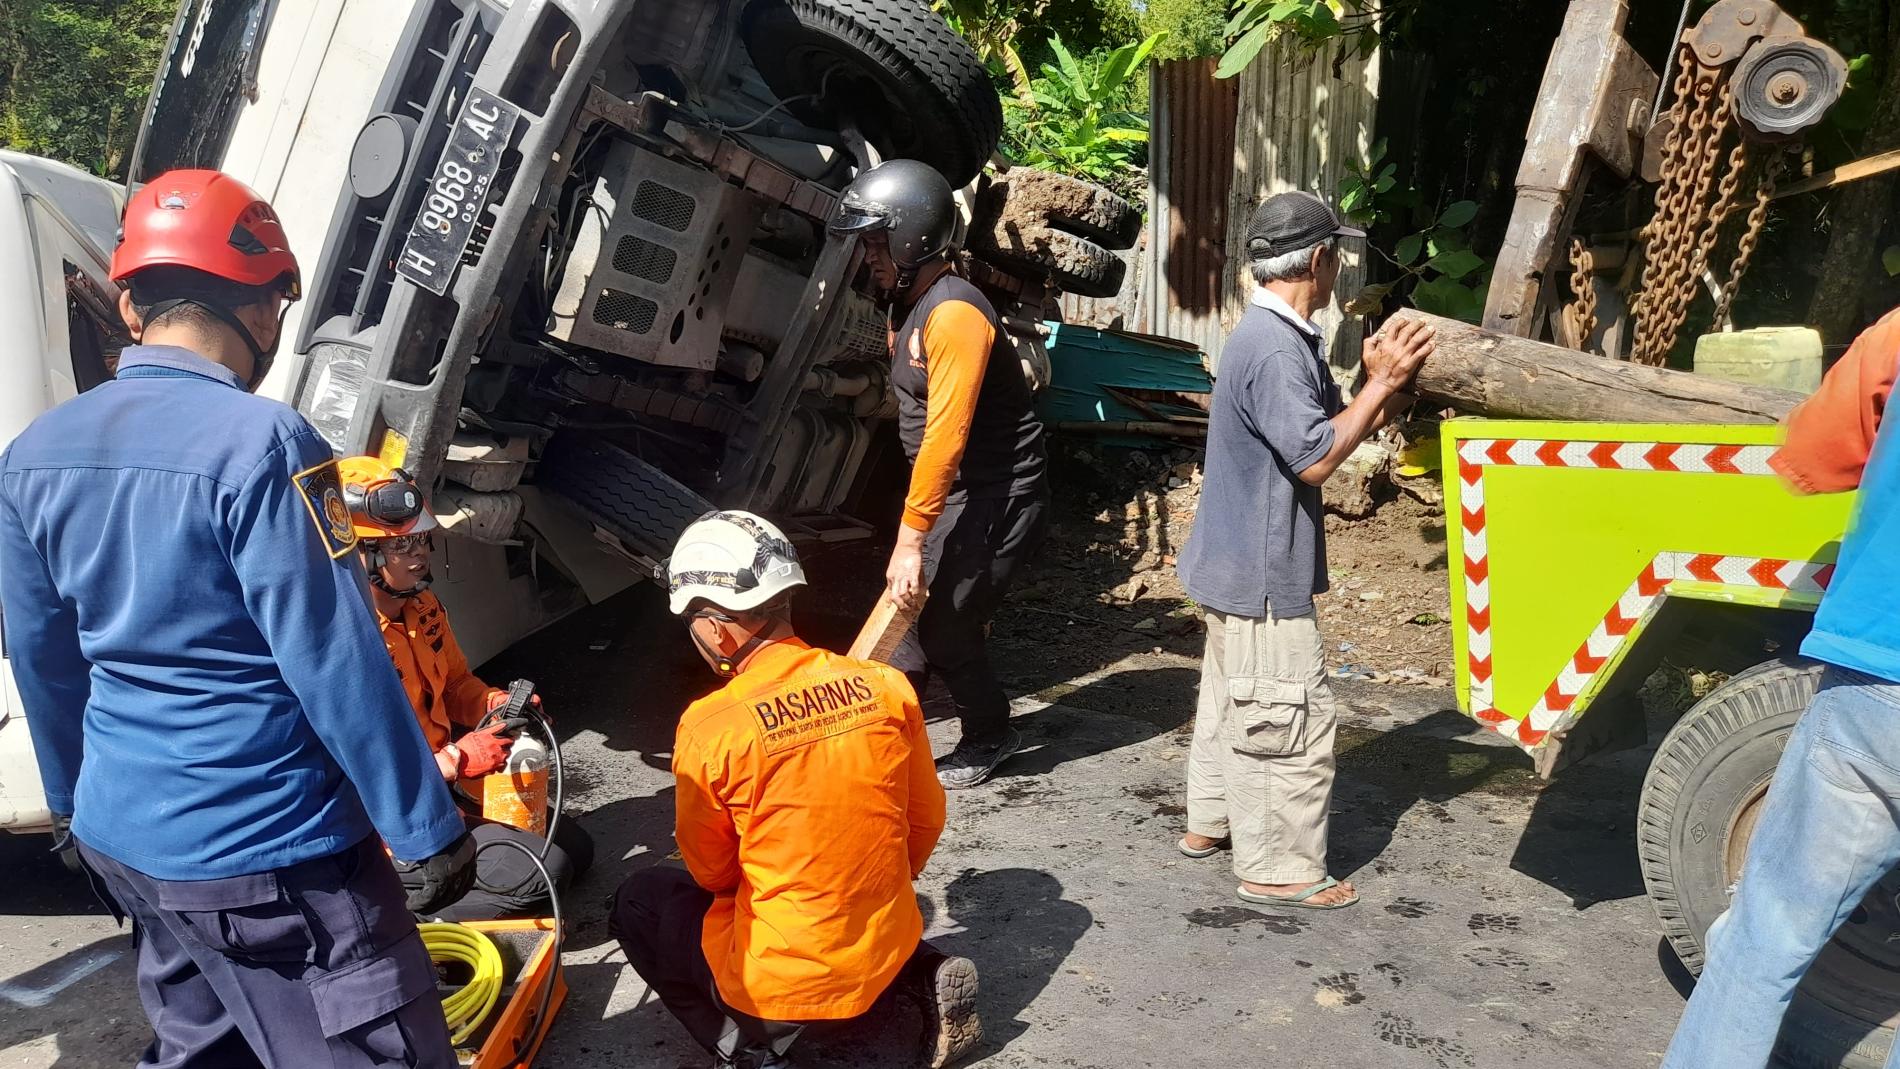 Gusti Randa Berhasil Selamatkan Diri, Truk Pasir Melorot di Tanjakan Maut Kota Semarang